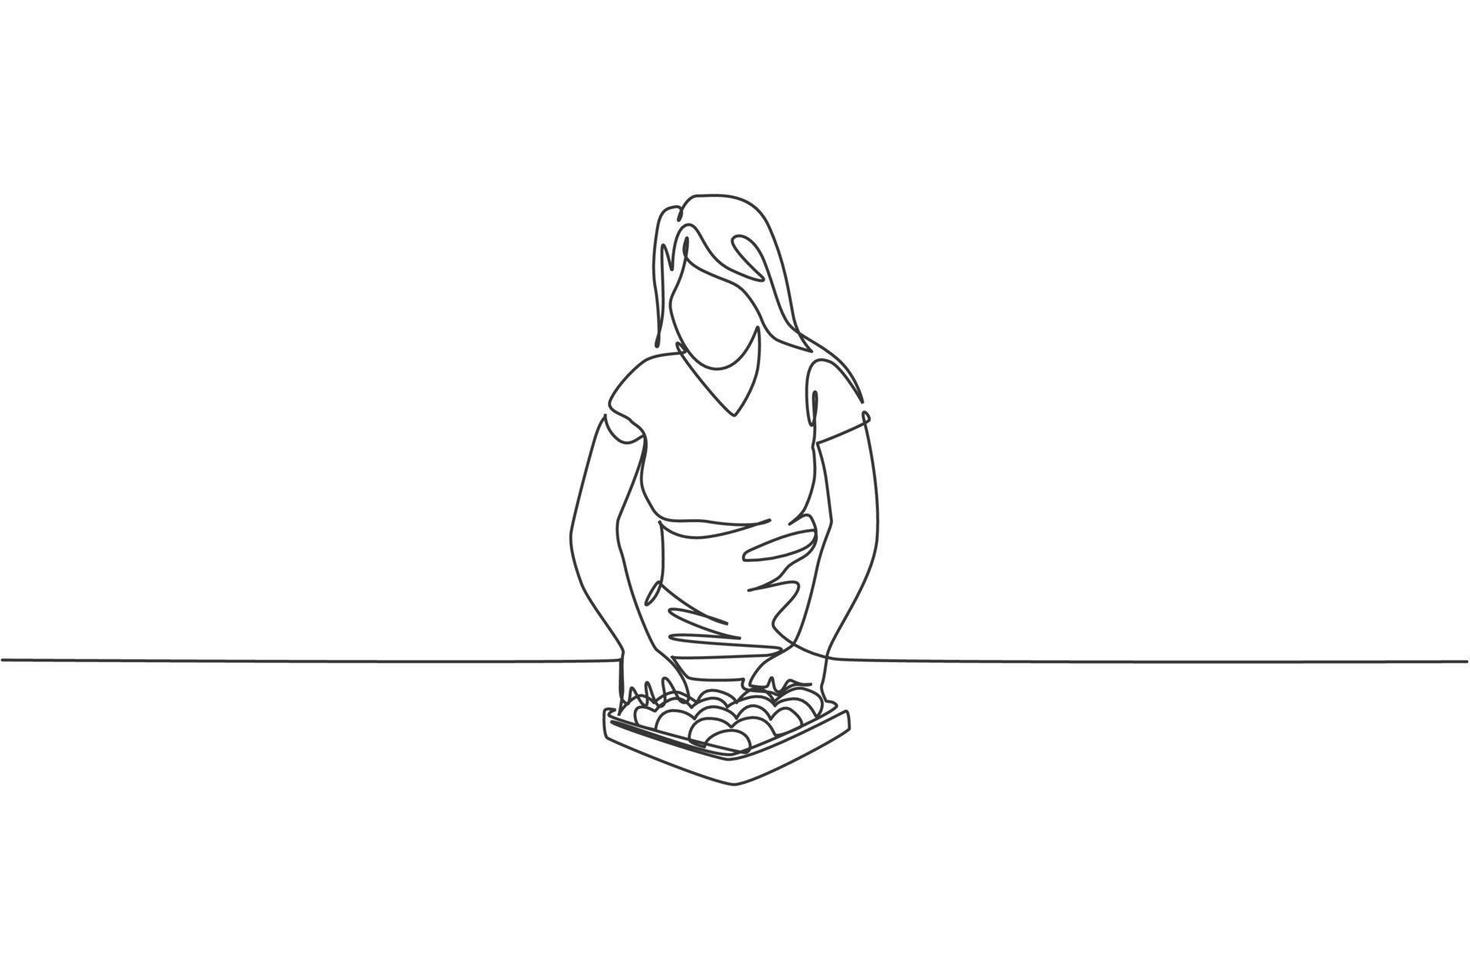 único desenho de linha contínua da menina de bilhar de beleza jovem preparando a mesa de bilhar de piscina de bolas na sala de bilhar no bar. conceito de jogo de esporte indoor. ilustração em vetor design de desenho de uma linha na moda